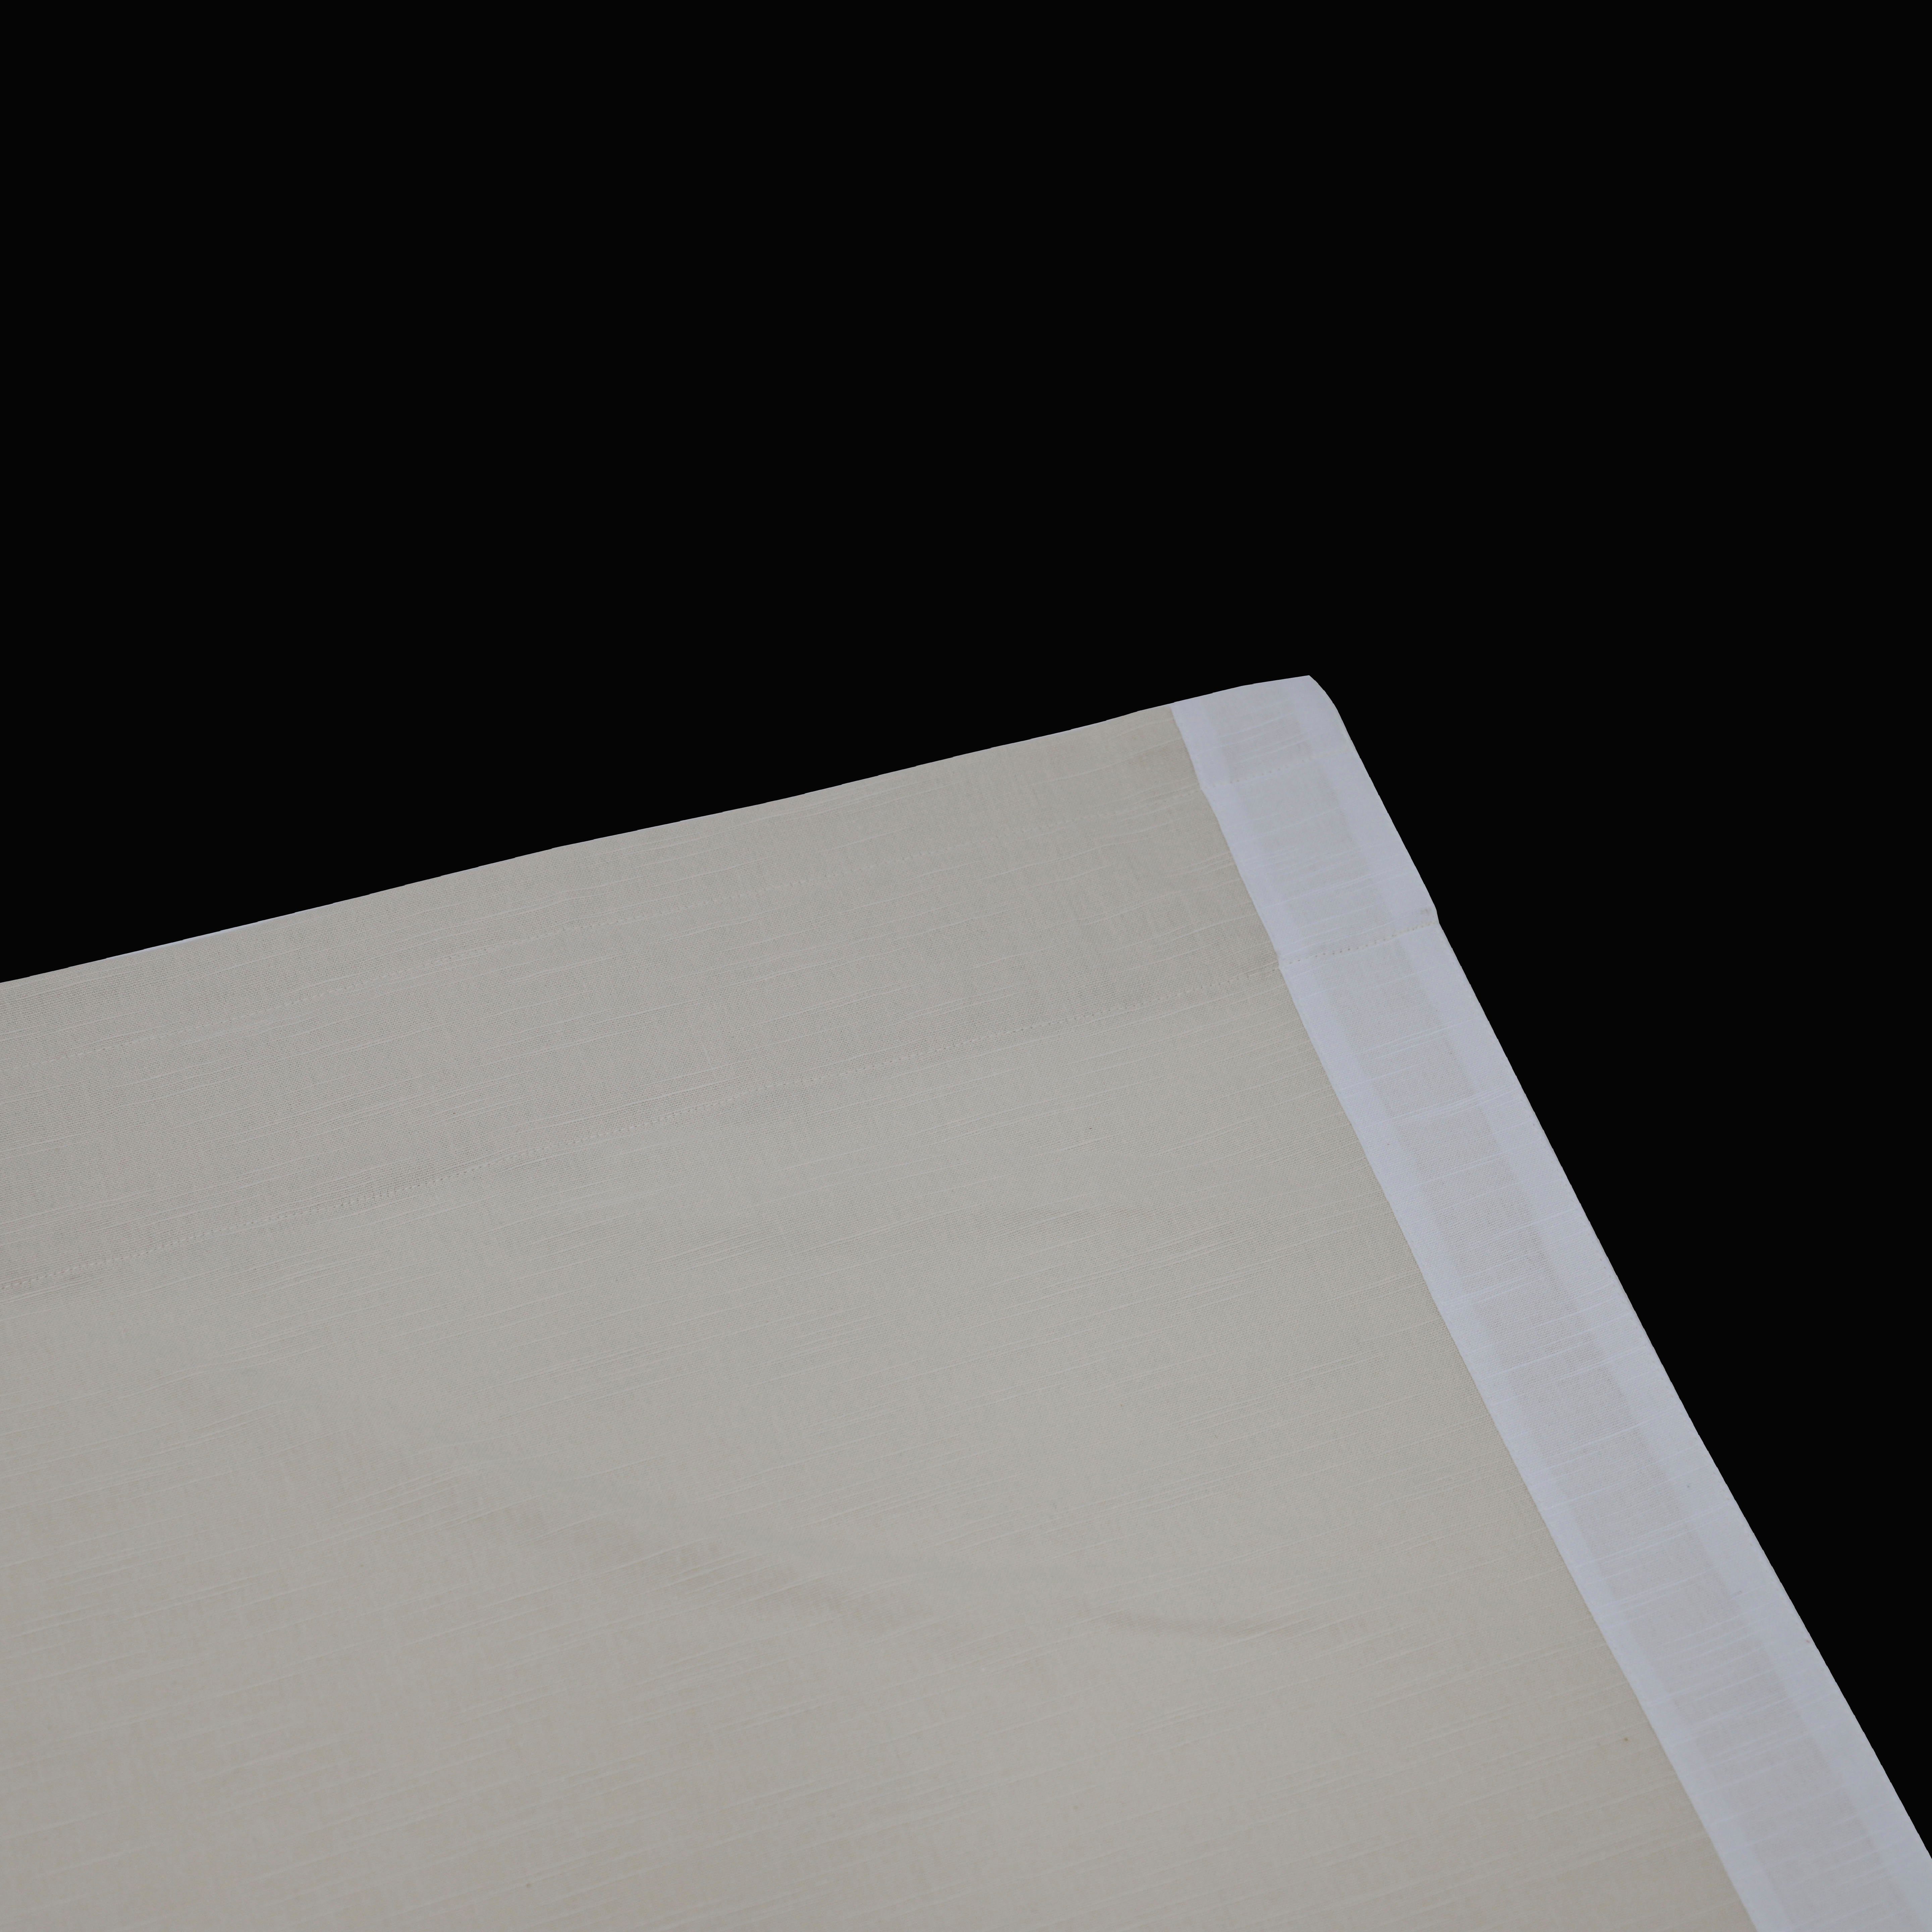 Vorhang Matias, andas, Stangendurchzug (1 Größen blickdicht, monochrom, beige/weiß blickdicht, verschiedene St)